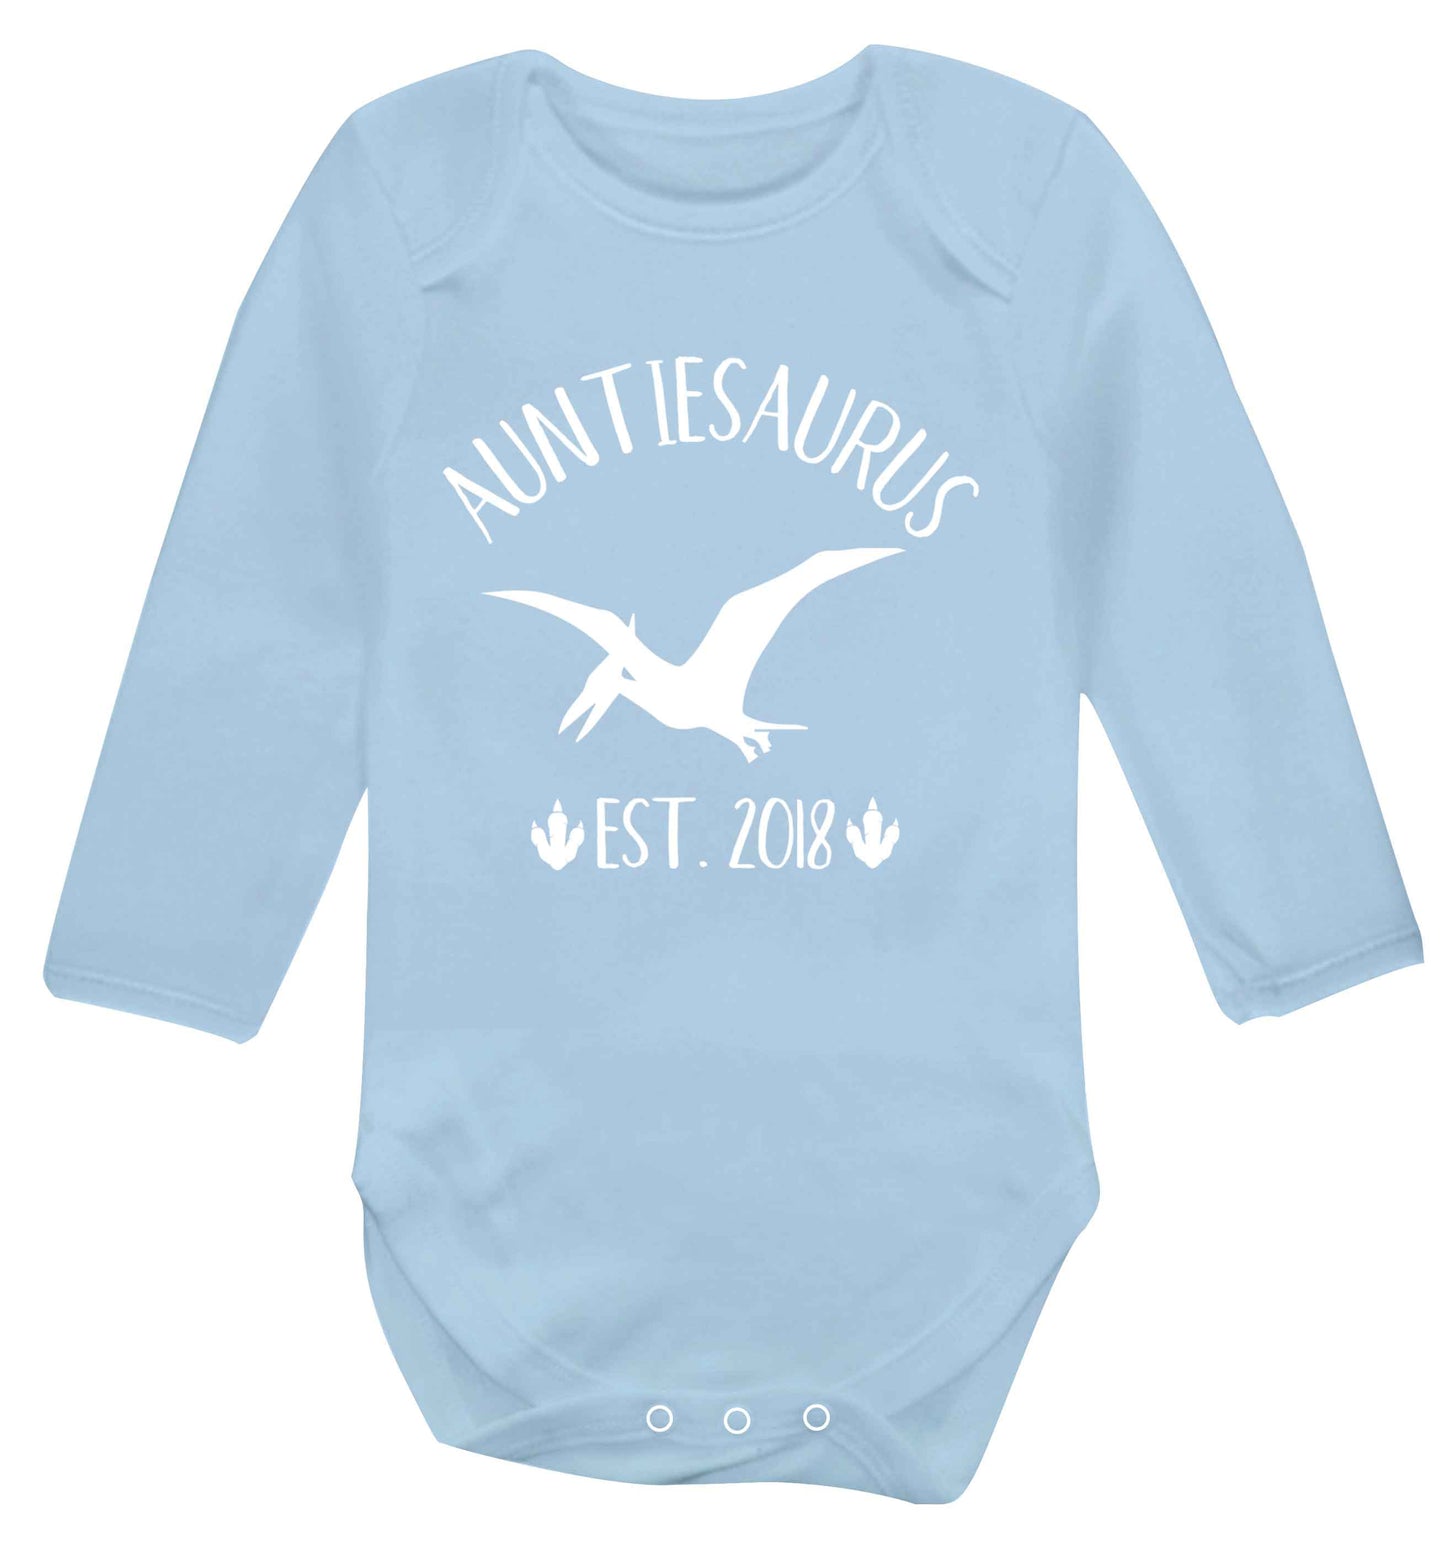 Personalised auntiesaurus since (custom date) Baby Vest long sleeved pale blue 6-12 months